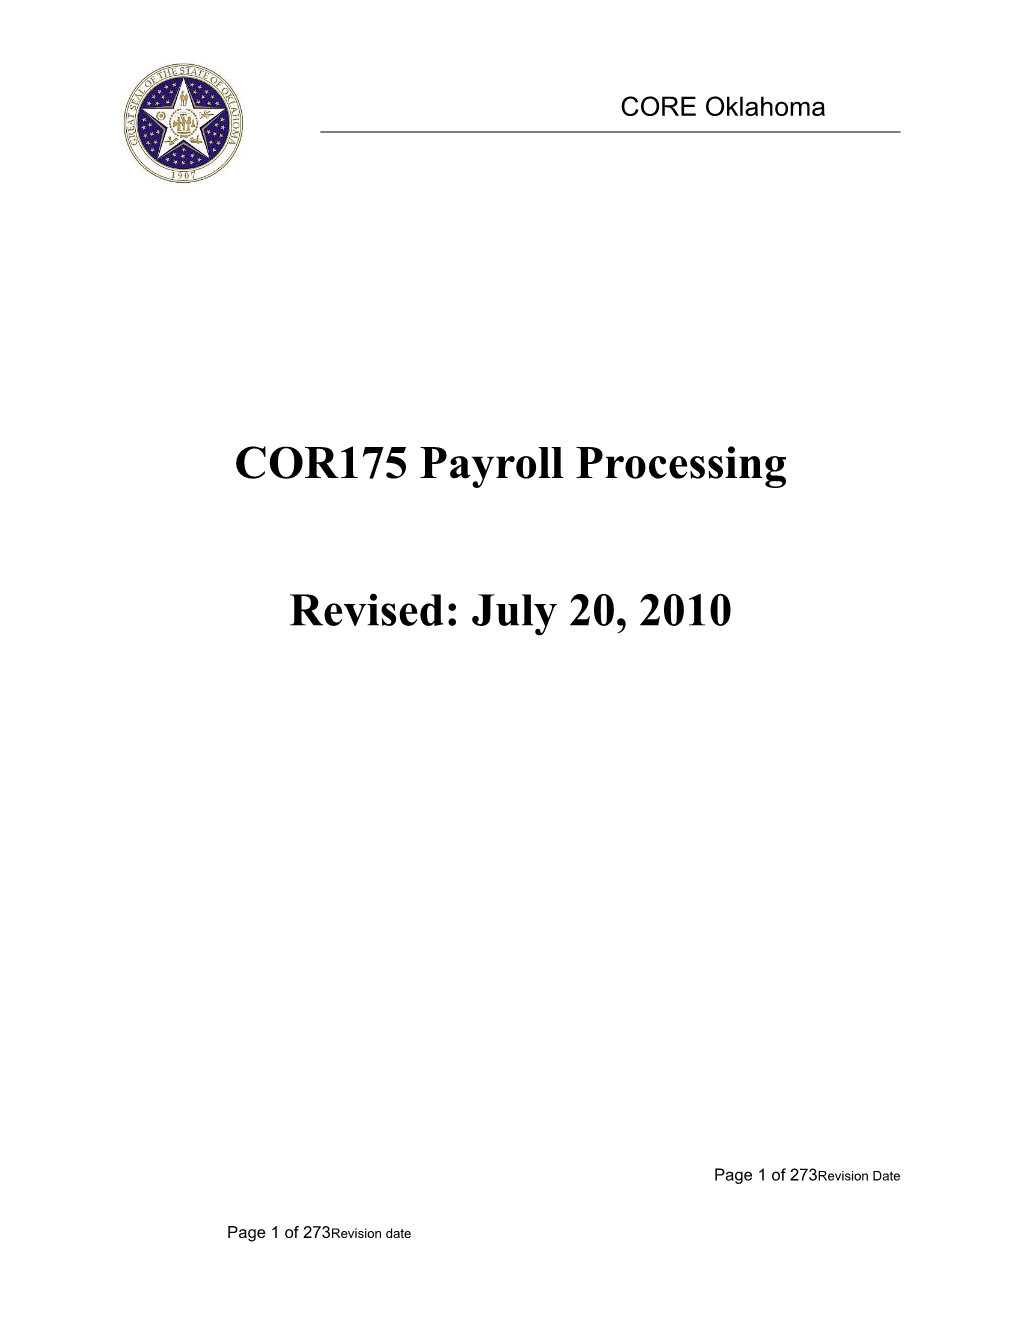 COR 175 Payroll Processing Manual